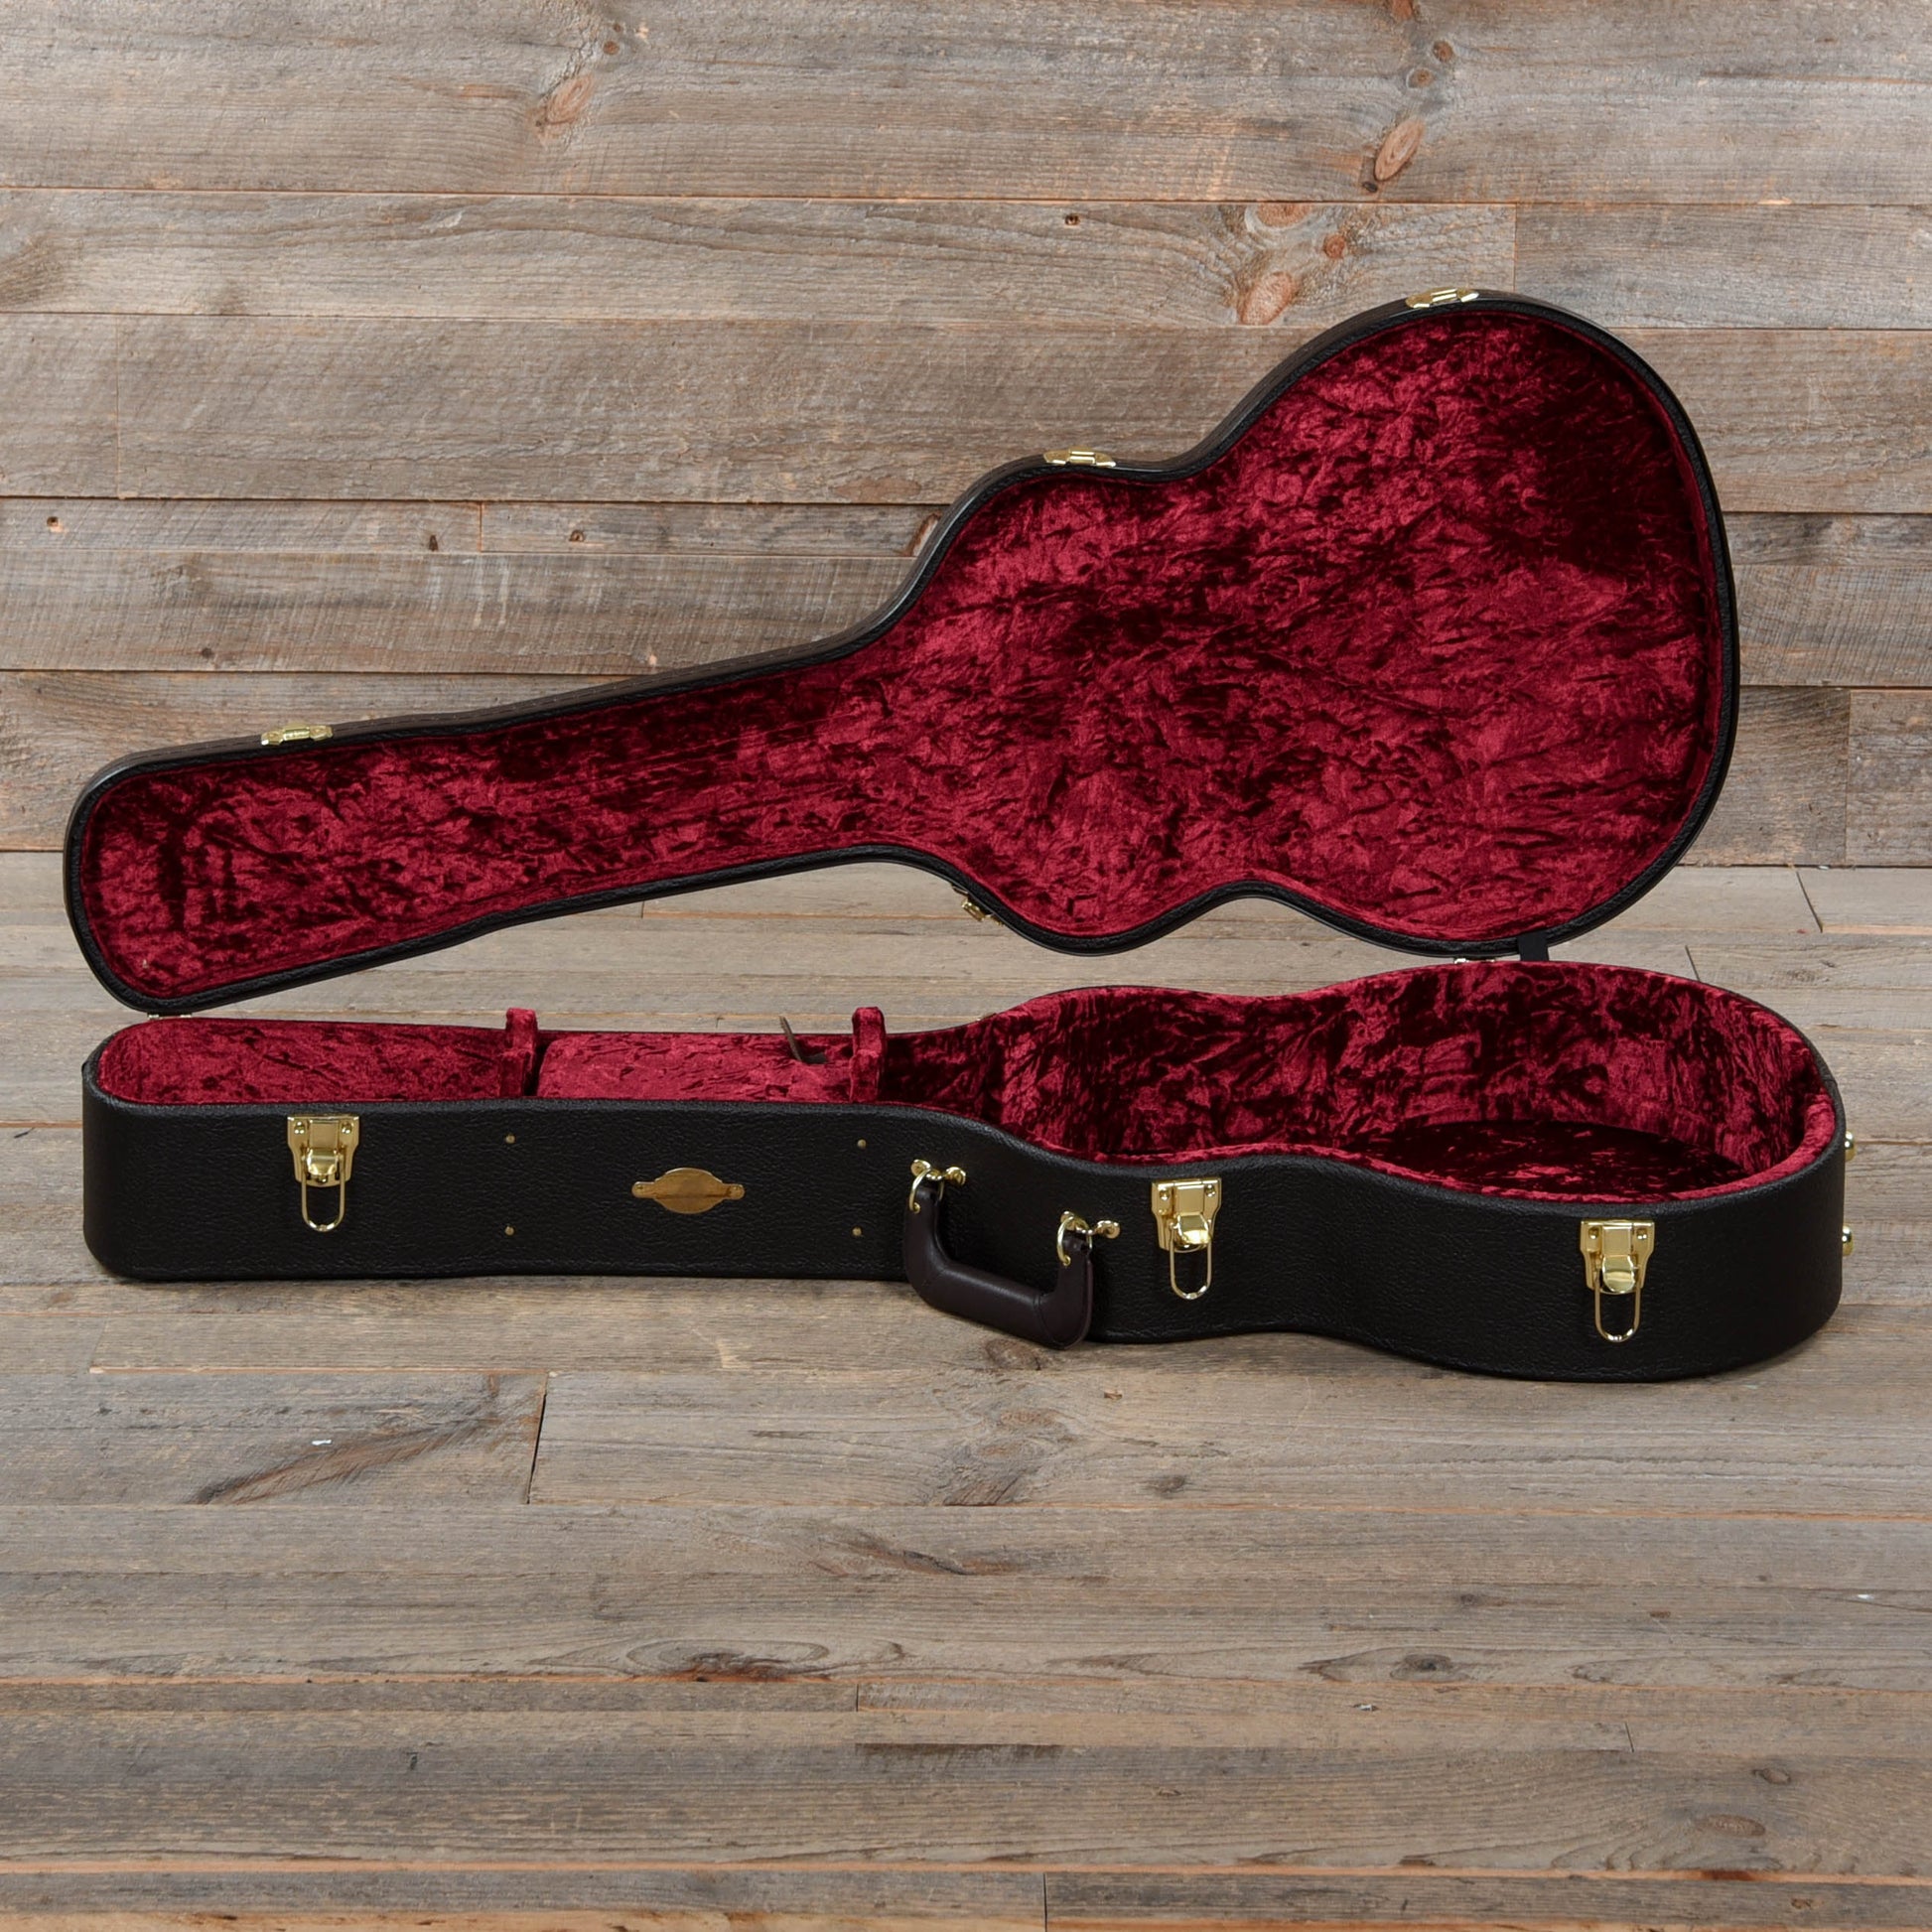 Taylor 214ce DLX Grand Auditorium Sitka/Rosewood Acoustic Guitars / OM and Auditorium